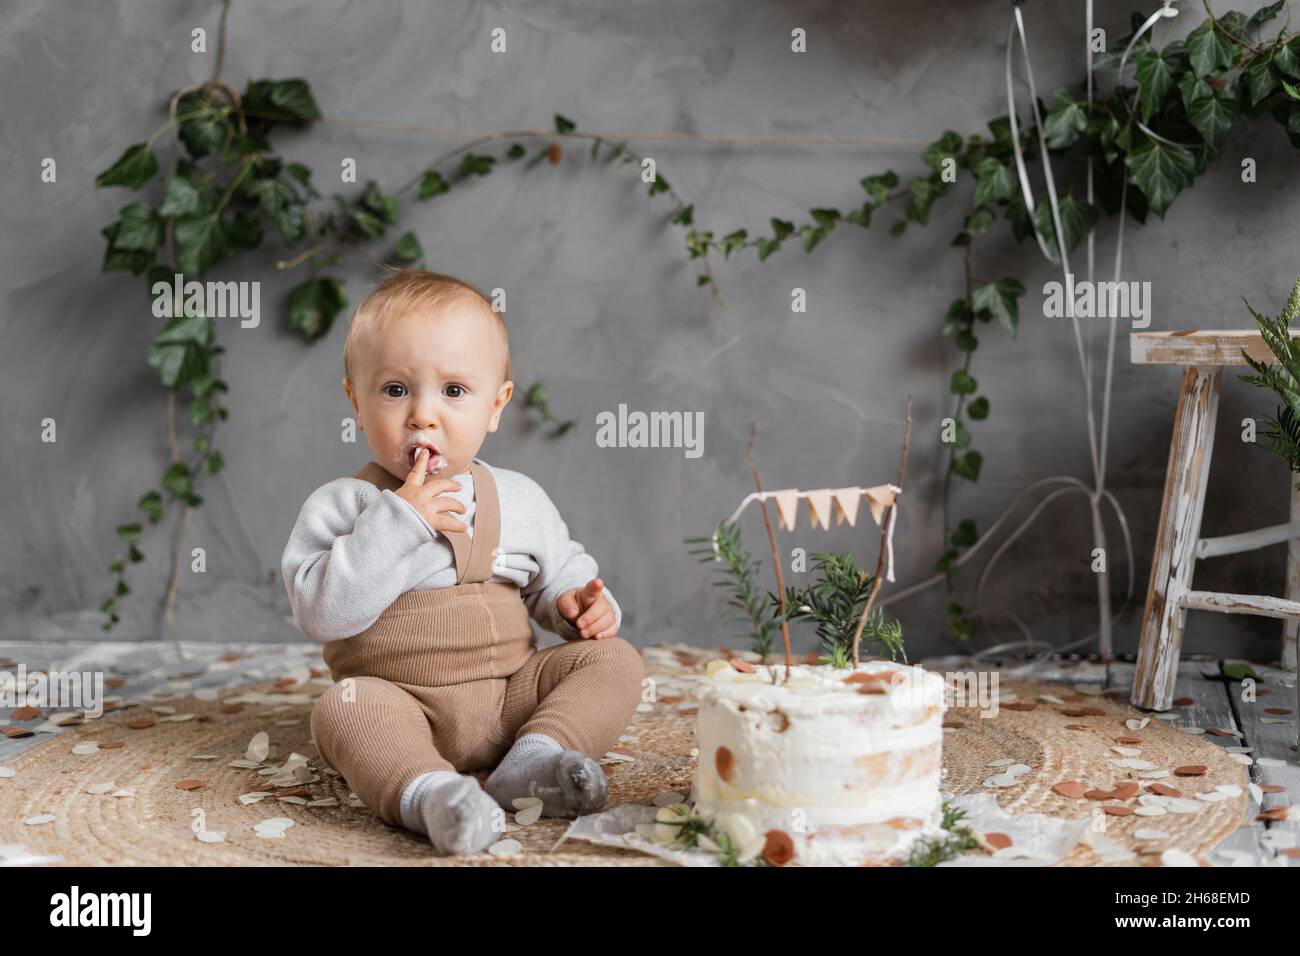 Erster Geburtstag eines kleinen Jungen, der Kuchen isst, ein einjähriges Kleinkind. Kind mit Kuchen im Studio. Kindergeburtstag Stockfoto